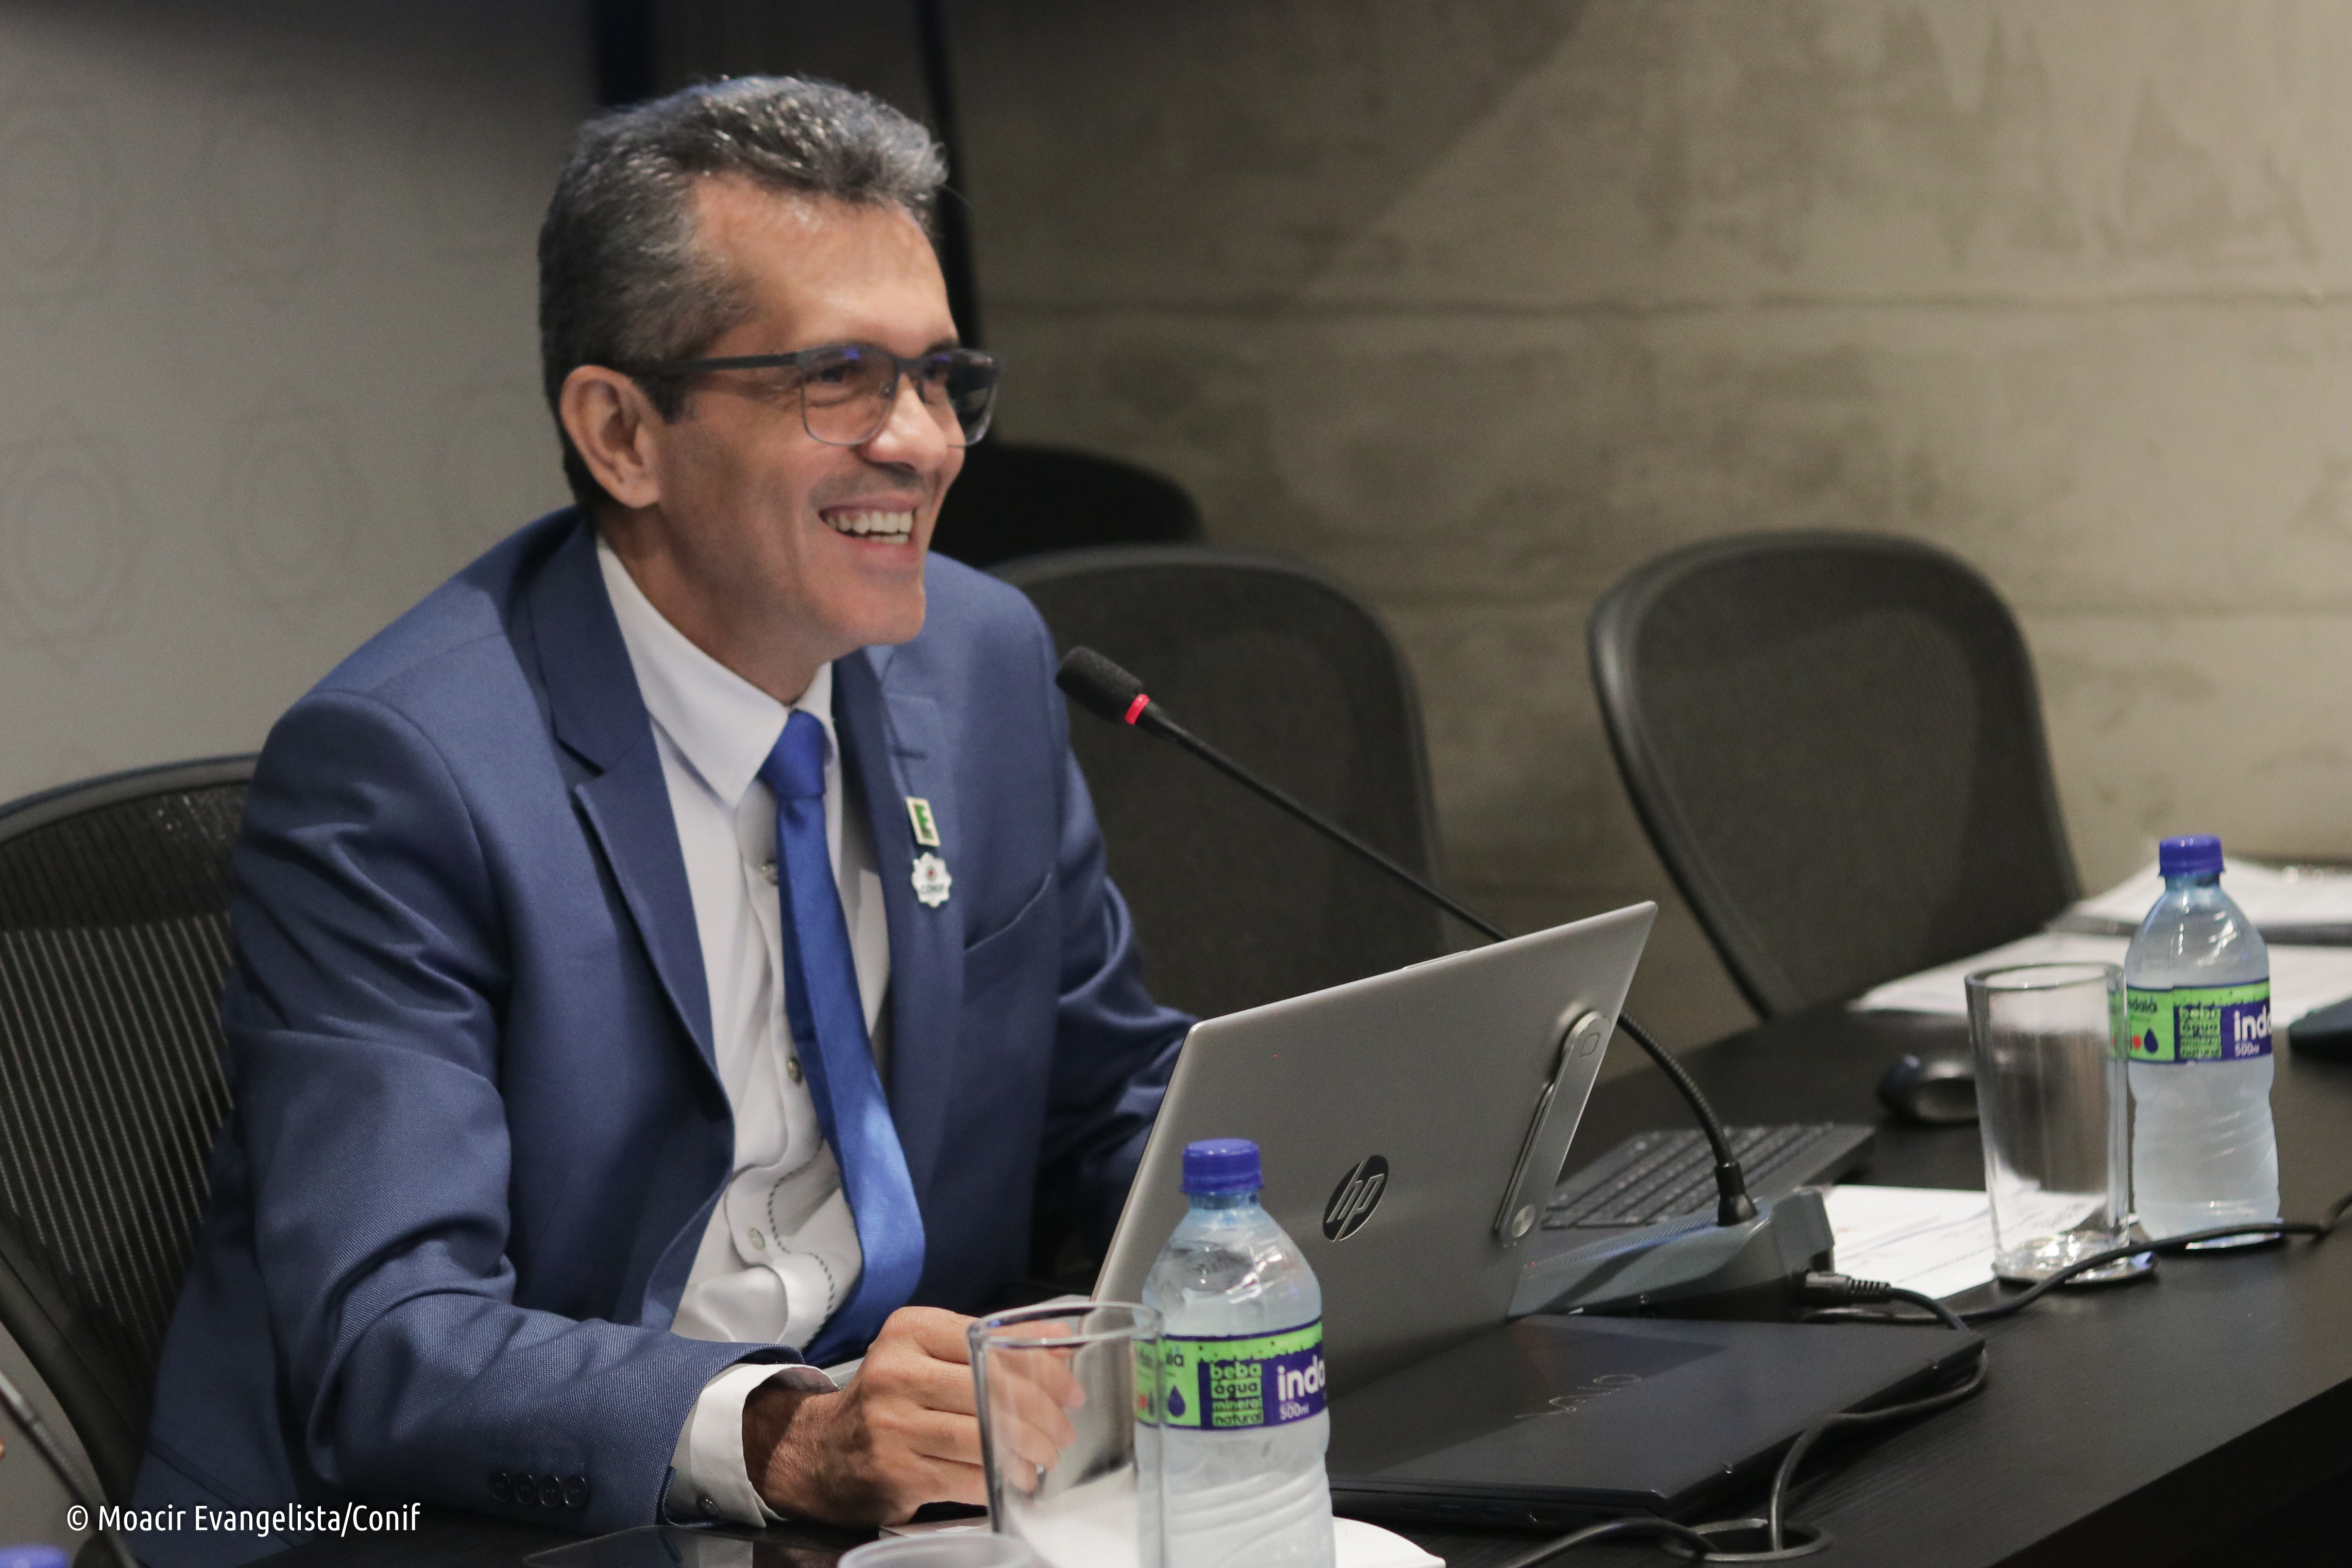 O reitor do Instituto Federal Goiano (IF Goiano), Elias de Pádua Monteiro, foi eleito o novo presidente do Conif. Crédito: Moacir Evangelista